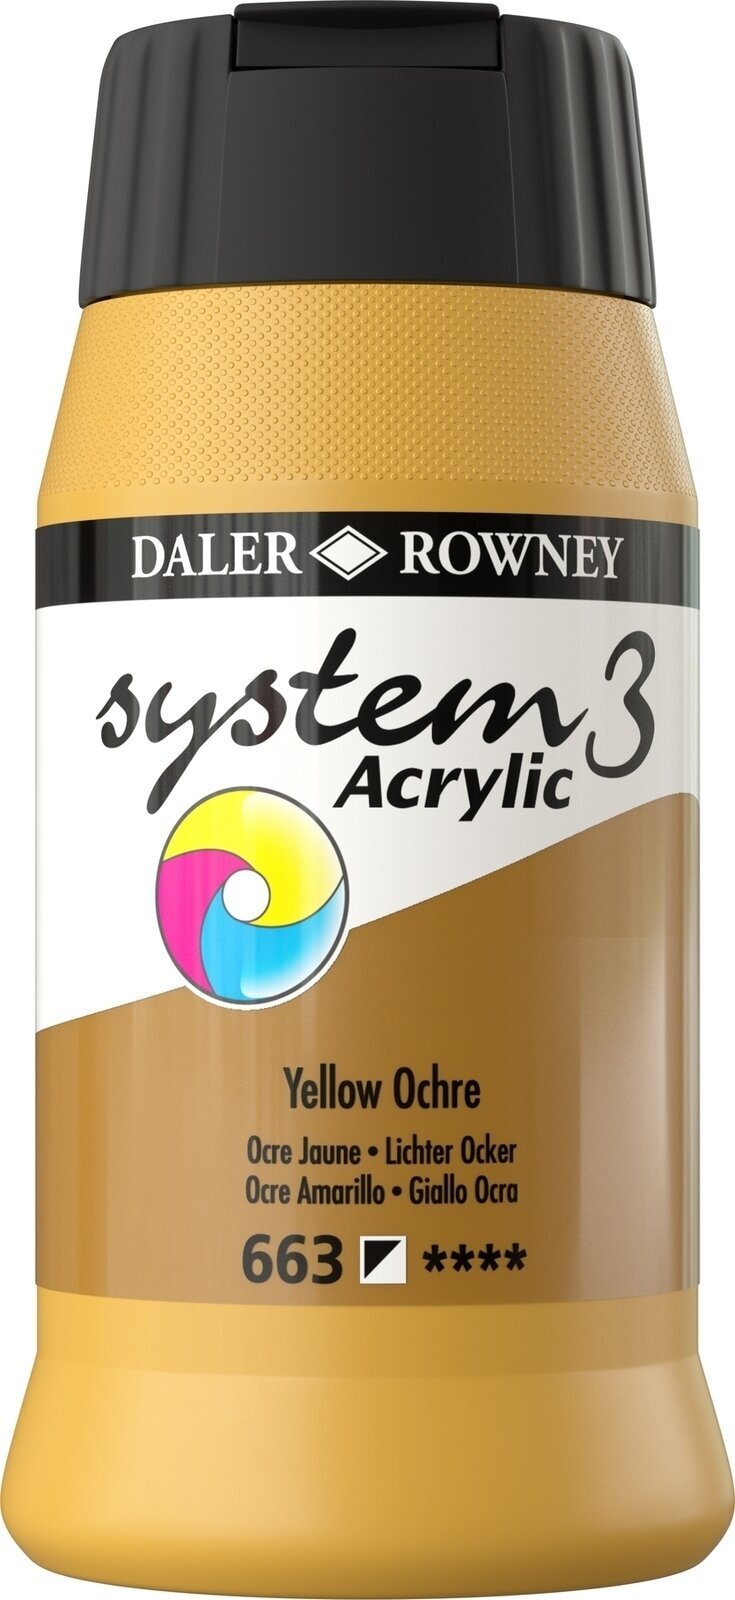 Akrylmaling Daler Rowney System3 Akrylmaling Yellow Ochre 500 ml 1 stk.